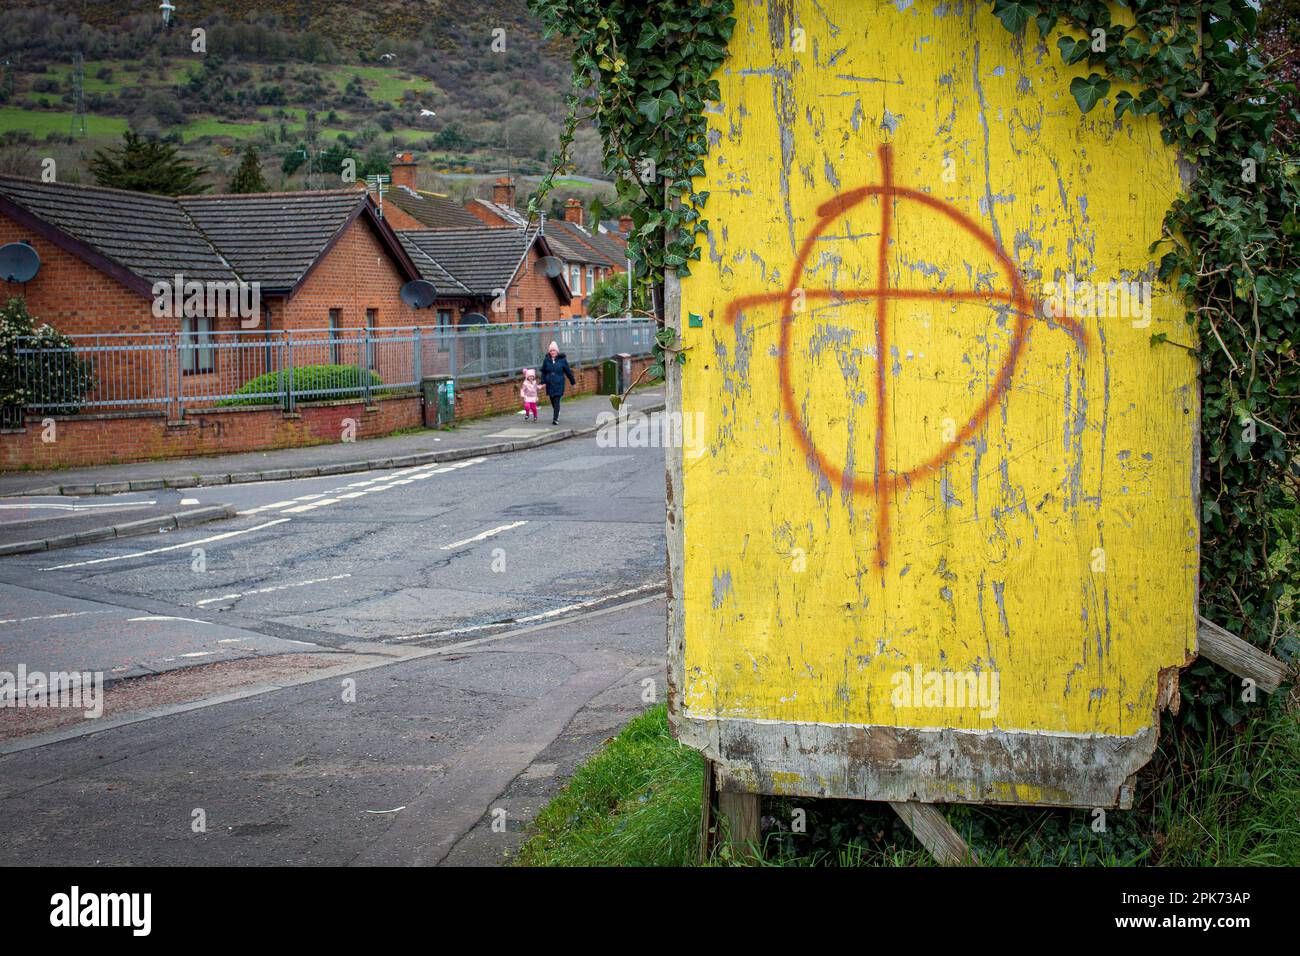 NORDIRLAND - Eine Frau mit einem Kind läuft in West-Belfast an einem drohenden loyalen Graffiti vorbei. Stockfoto